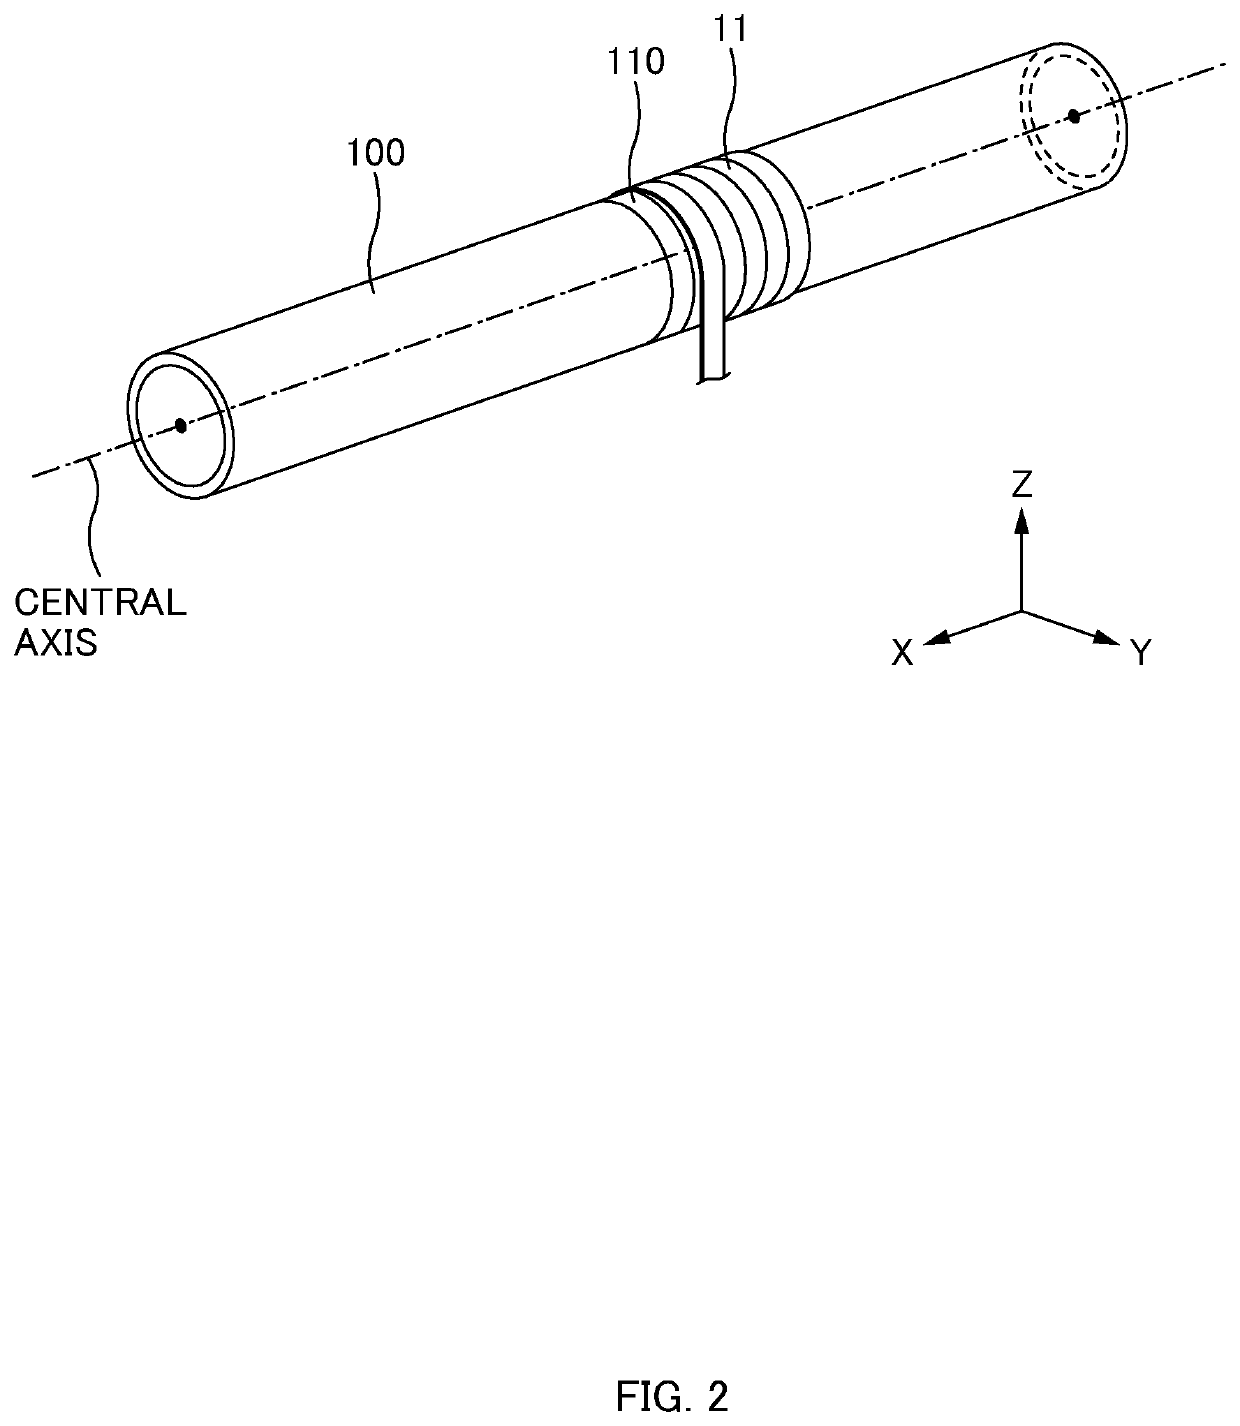 Boiler tube reinforcement device and boiler tube reinforcement method